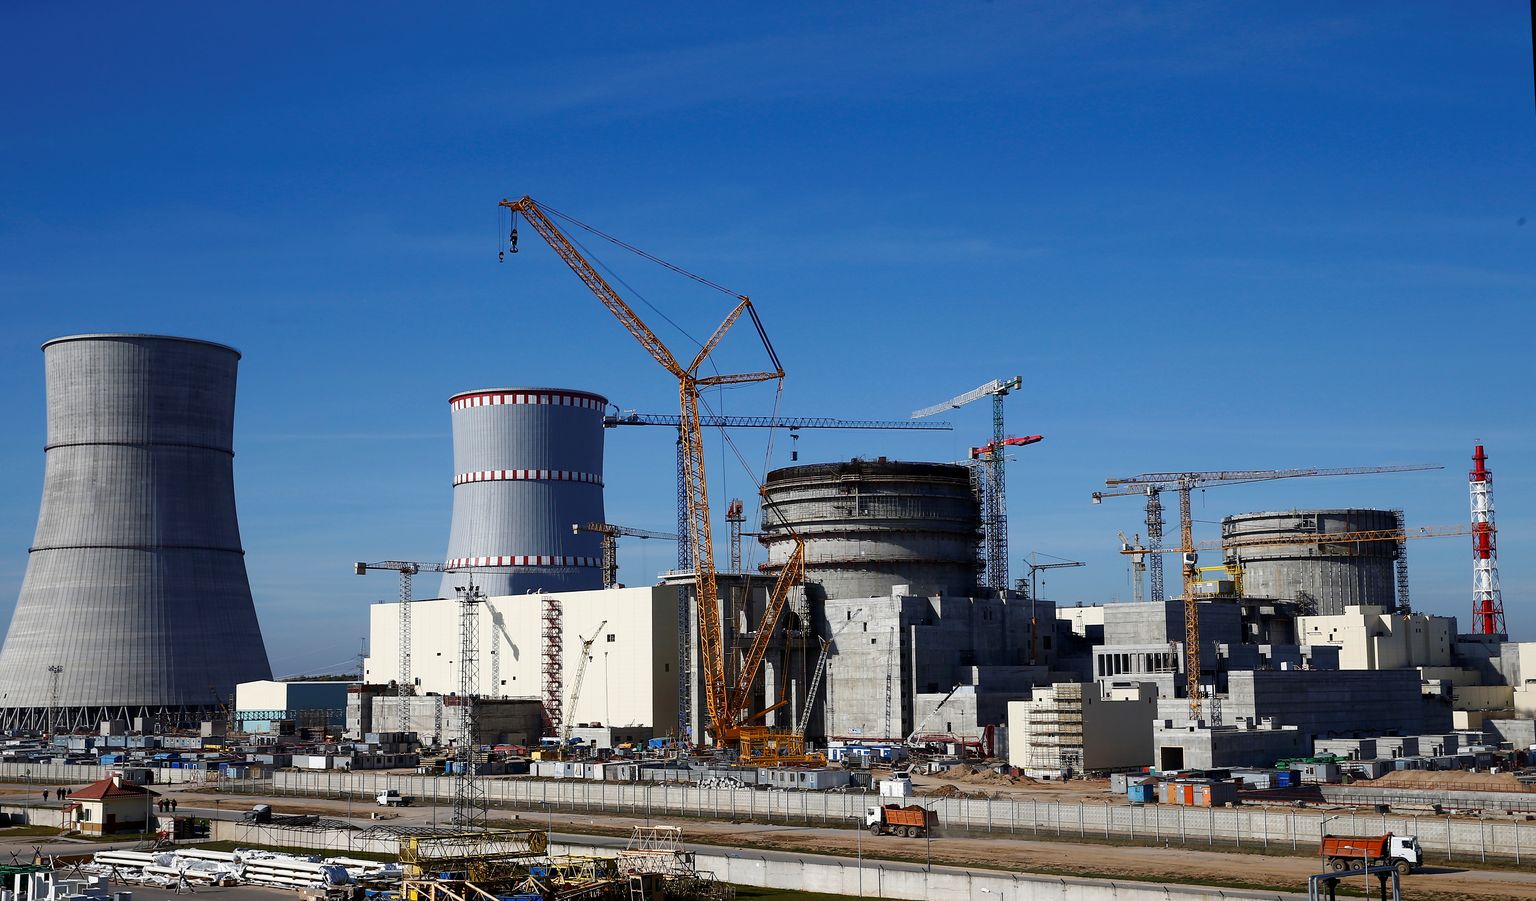 Белорусская или Островецкая АЭС — строящаяся атомная электростанция типа АЭС-2006. Стройплощадка расположена у северо-западной границы Белоруссии в 18 километрах от города Островец Гродненской области, в 50 км от Вильнюса.